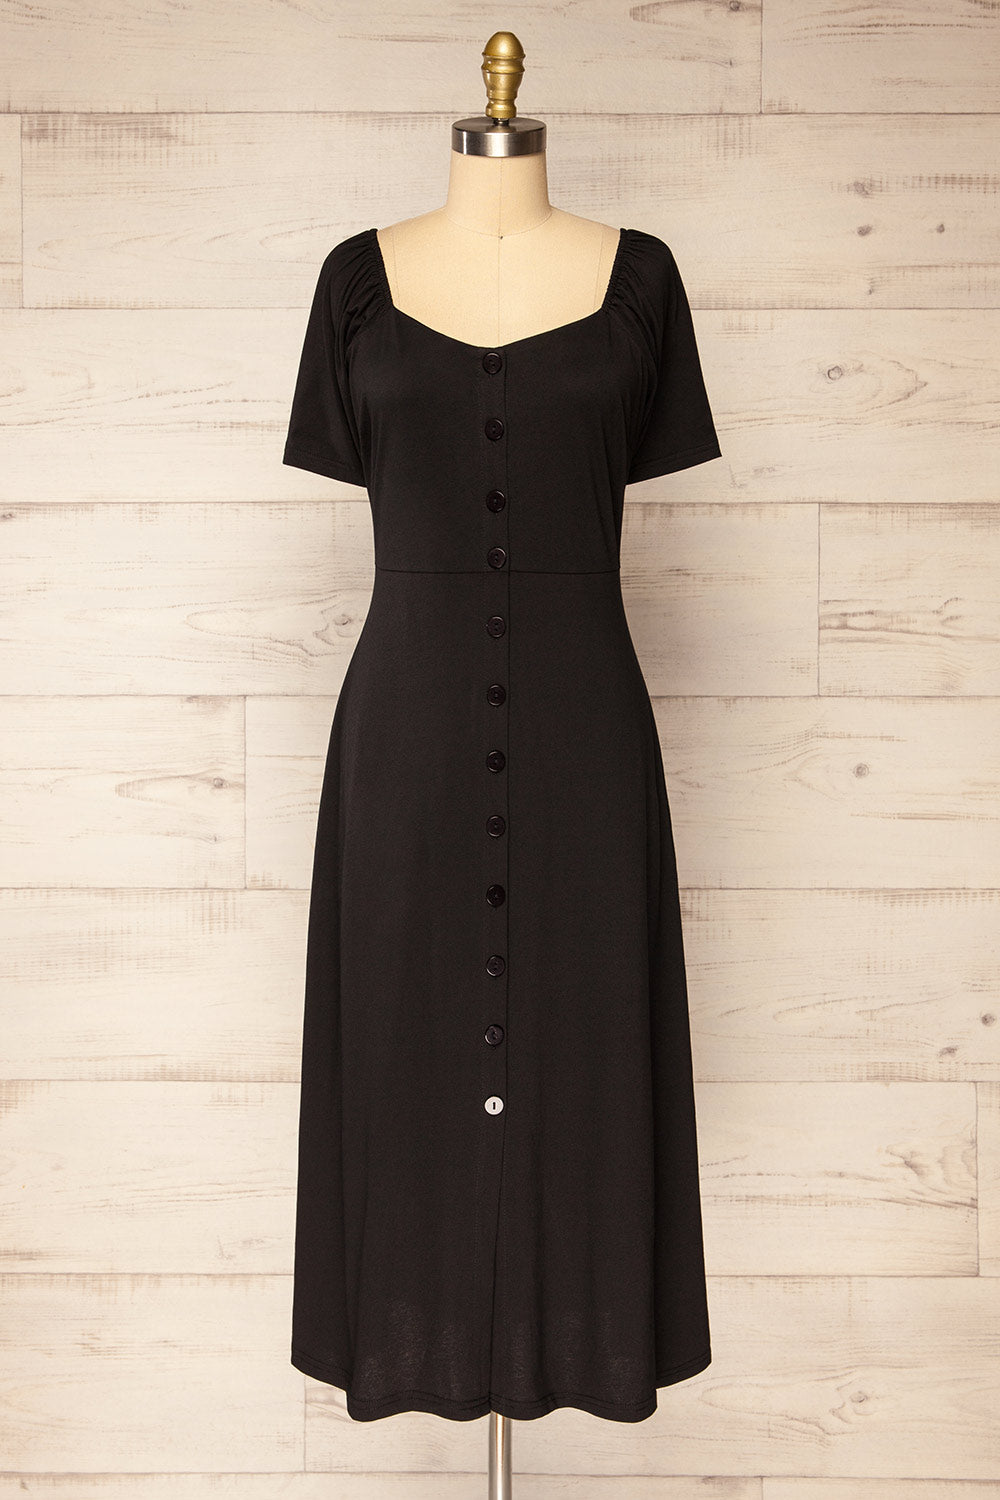 Zoelisoa Black Buttoned Midi Dress | La petite garçonne front view 